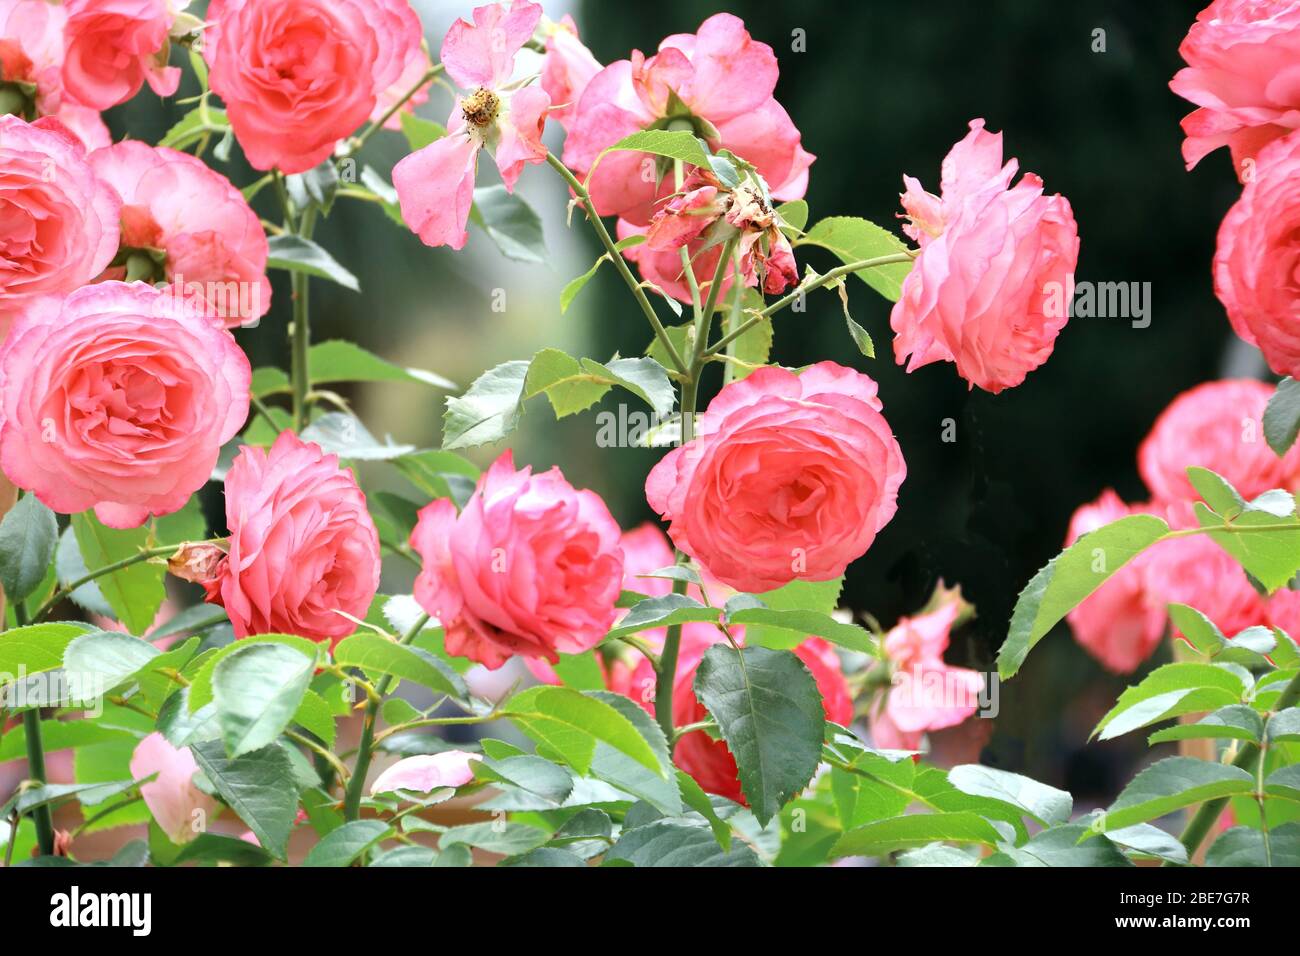 Hoa hồng: Với vẻ đẹp quyến rũ và mùi hương thơm ngát, hoa hồng là món quà thích hợp để thể hiện tình cảm của bạn. Hãy xem thử bức ảnh của hoa hồng tuyệt đẹp này và thưởng thức vẻ đẹp tuyệt vời của loài hoa này.